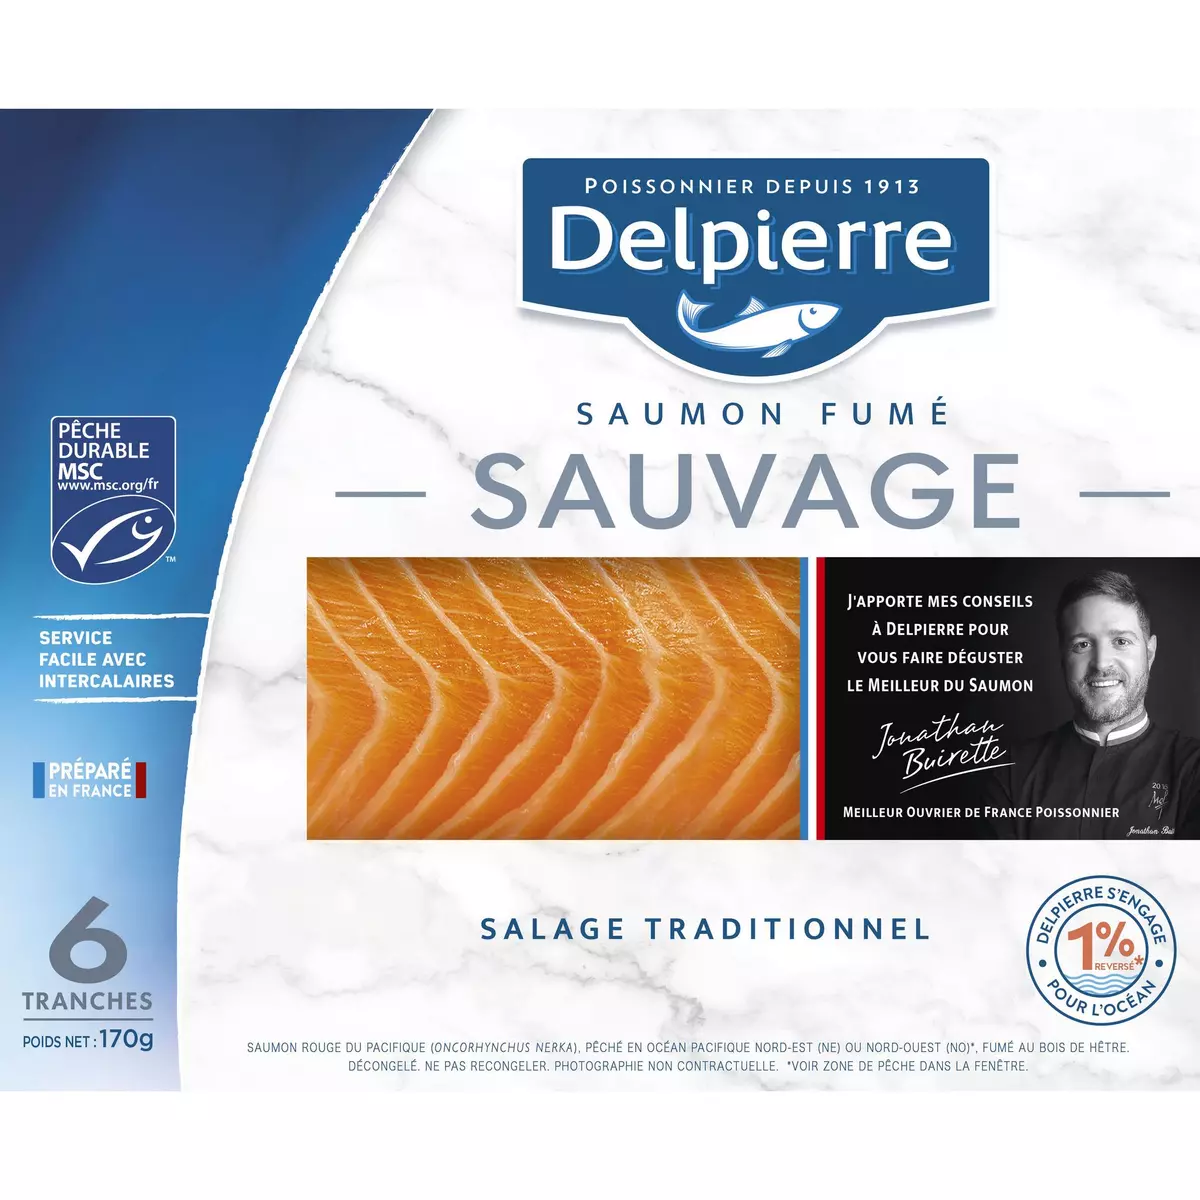 DELPIERRE Saumon fumé sauvage 6 tranches 170g